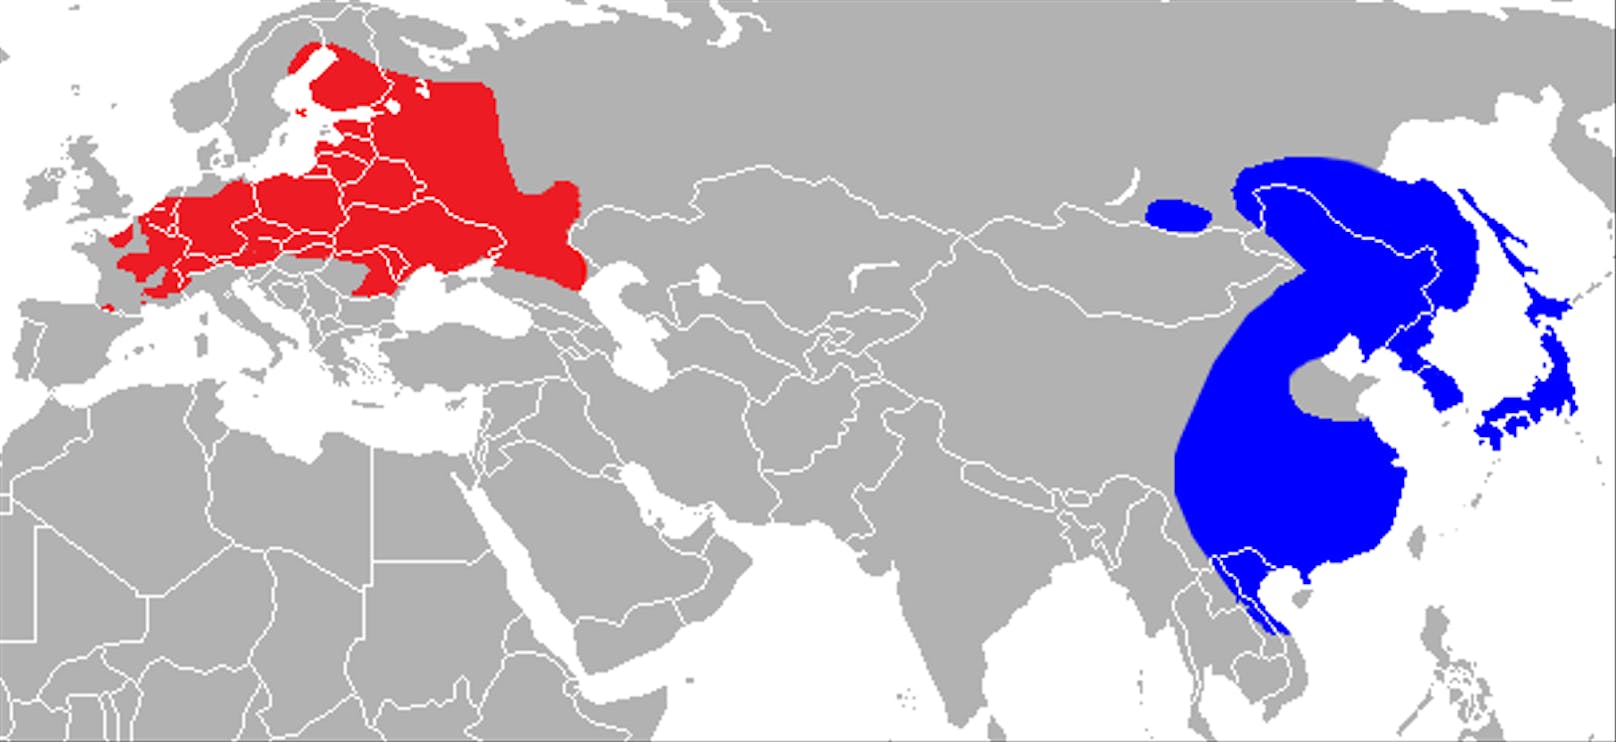 Die Tiere stammen ursprünglich aus dem asiatischen Raum (blau), sind aber zunehmend auch in Europa zu treffen (rot).